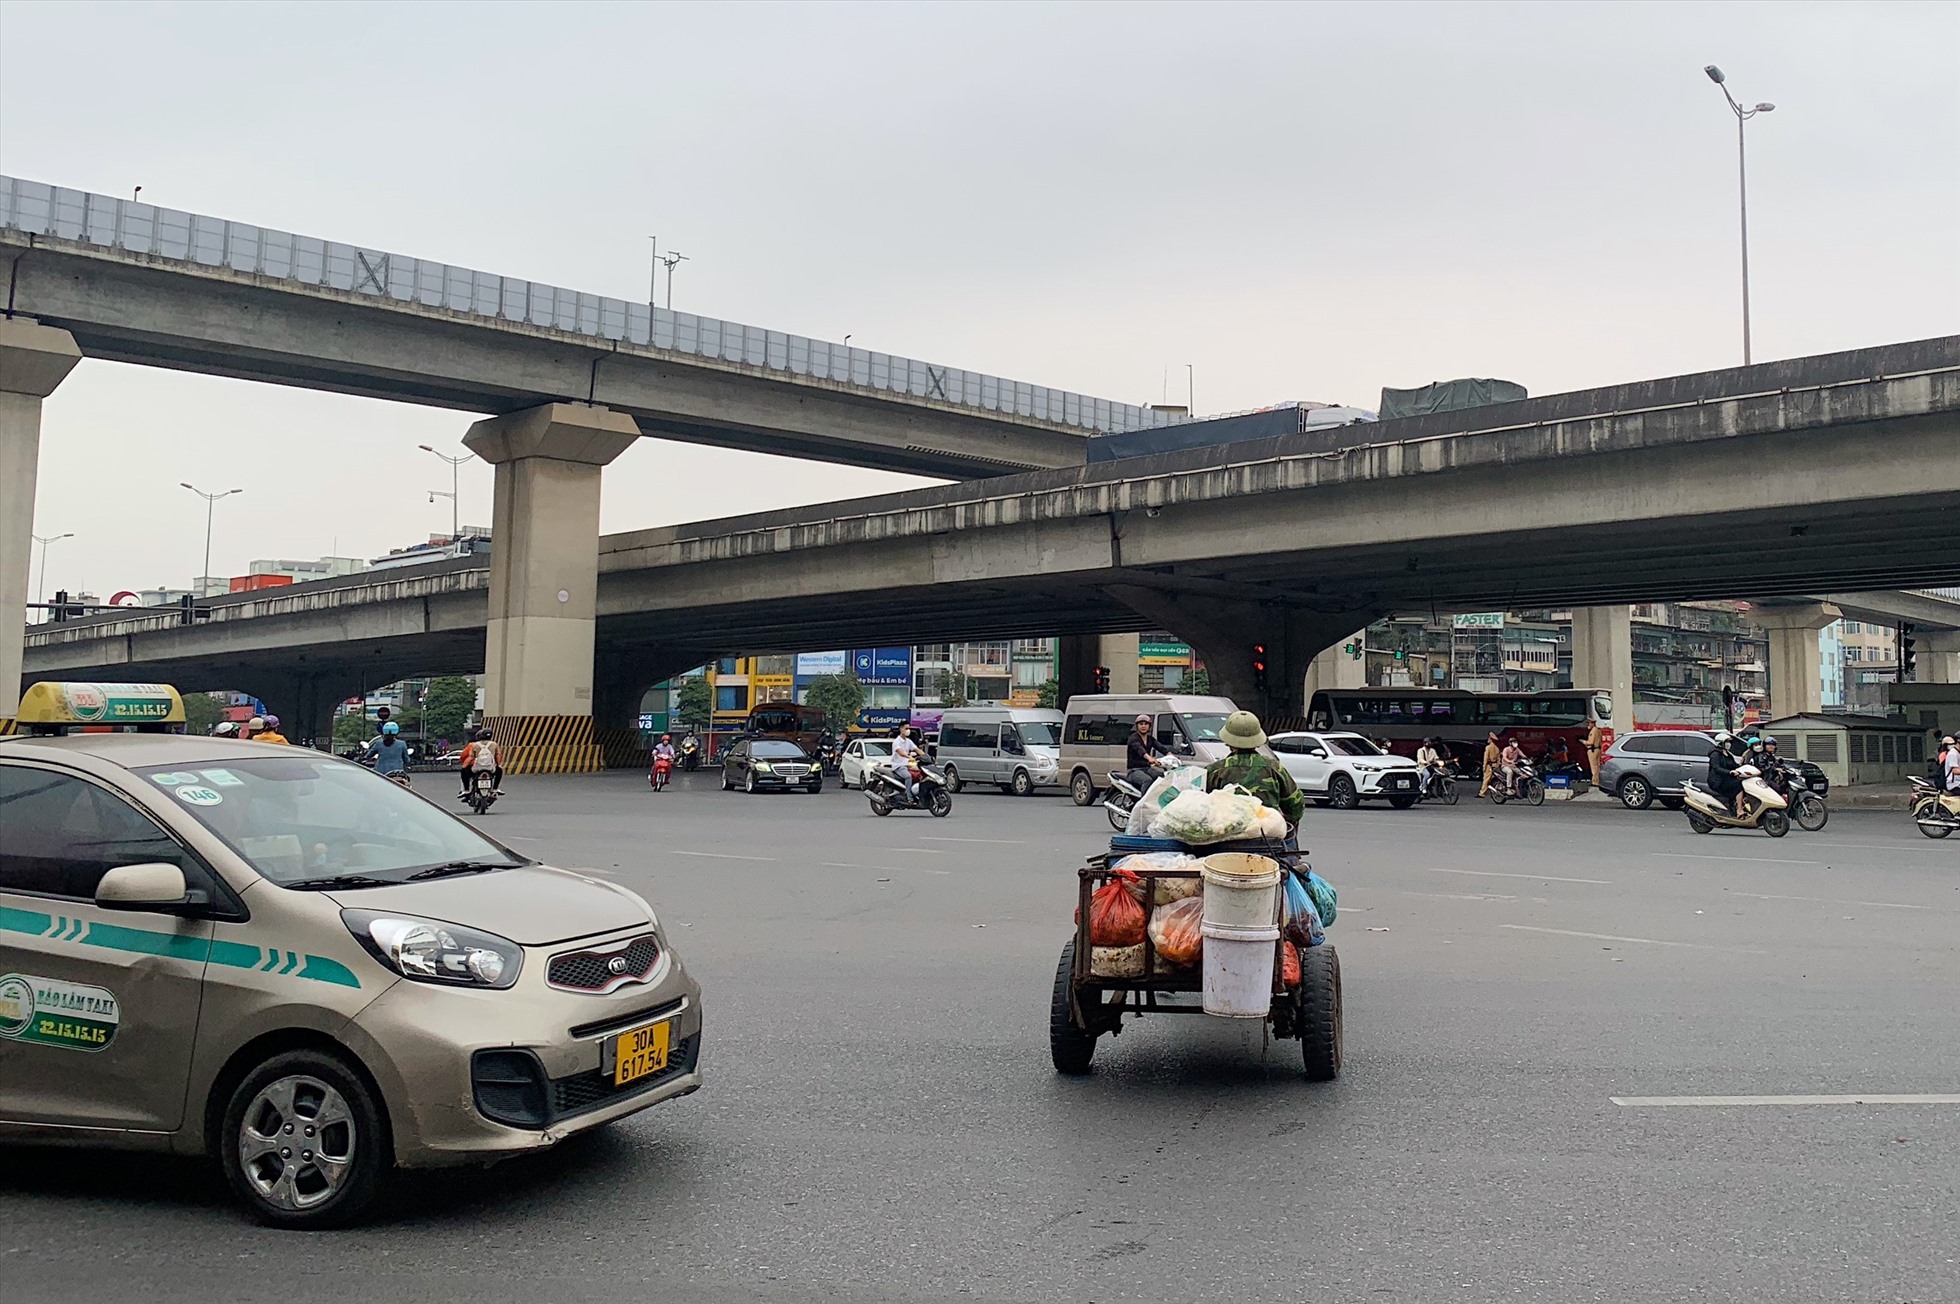 Xe tự chế đi được chiều, vượt đèn đỏ tại nút giao Nguyễn Trãi - Khuất Duy Tiến - Nguyễn Xiển. Ảnh: Thu hiền